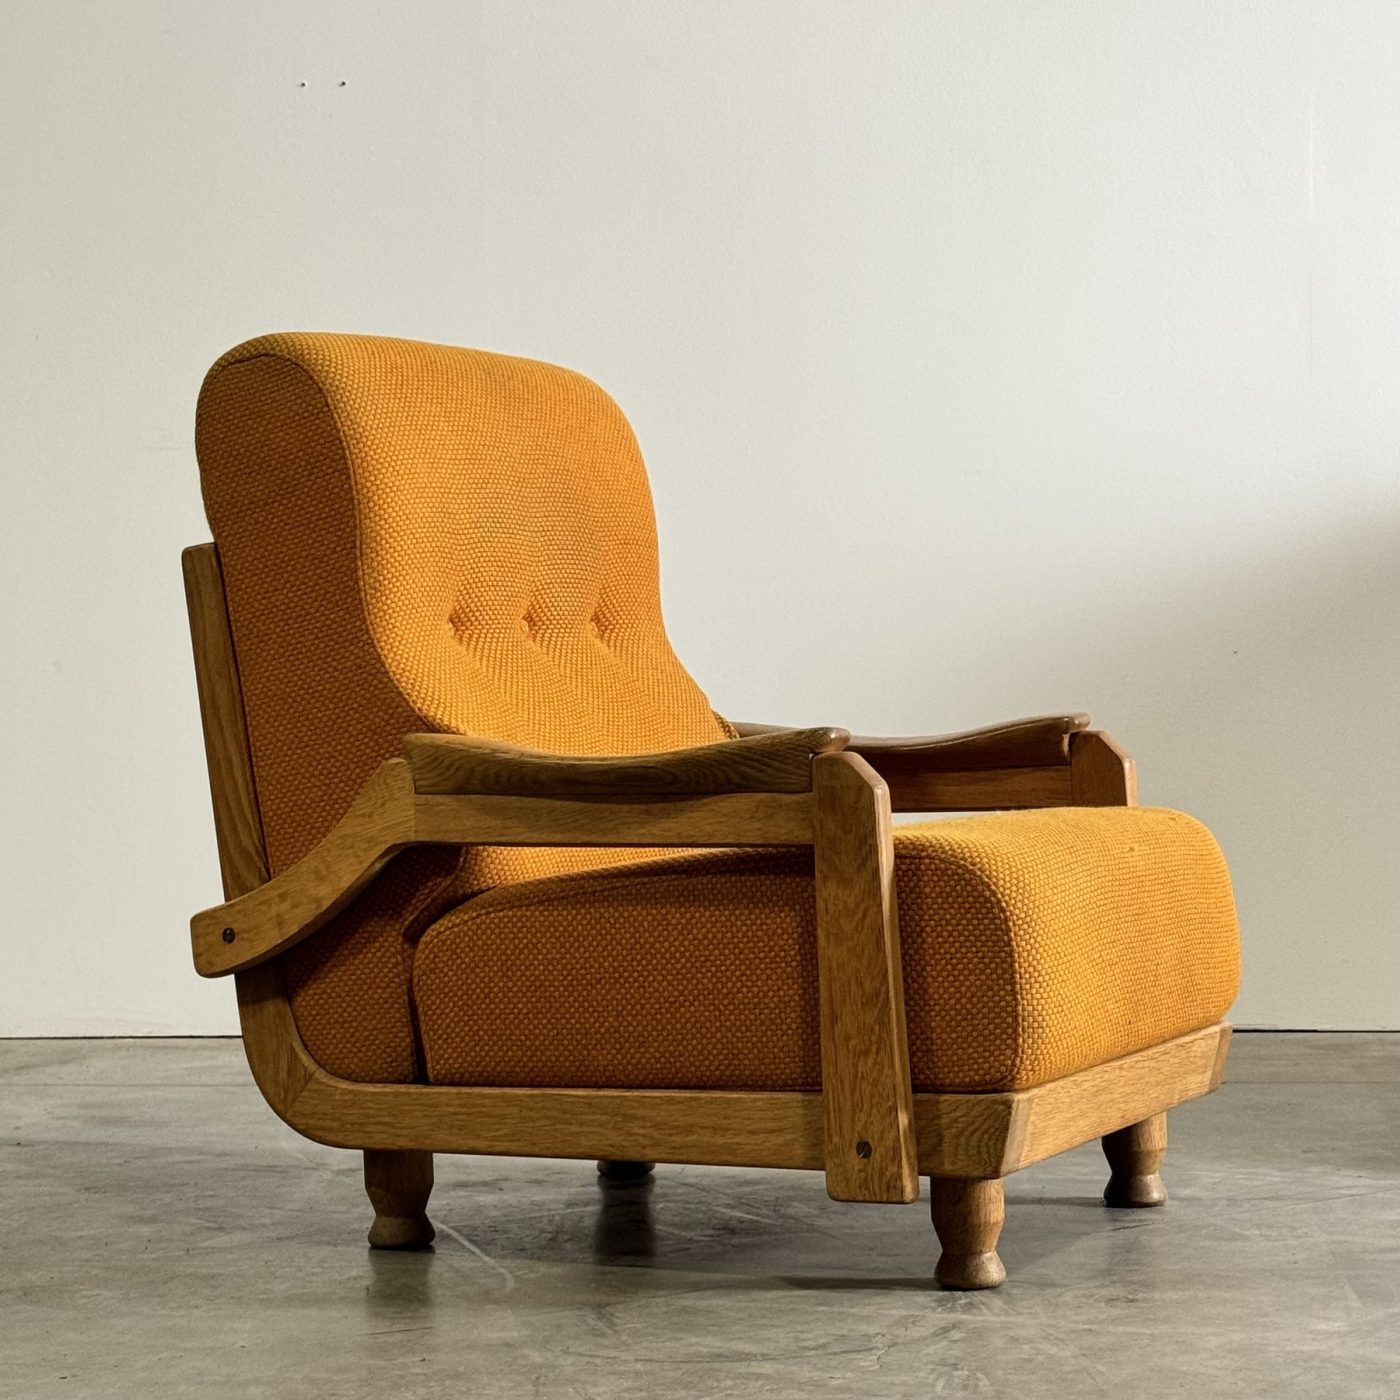 objet-vagabond-guillerme-armchairs0005